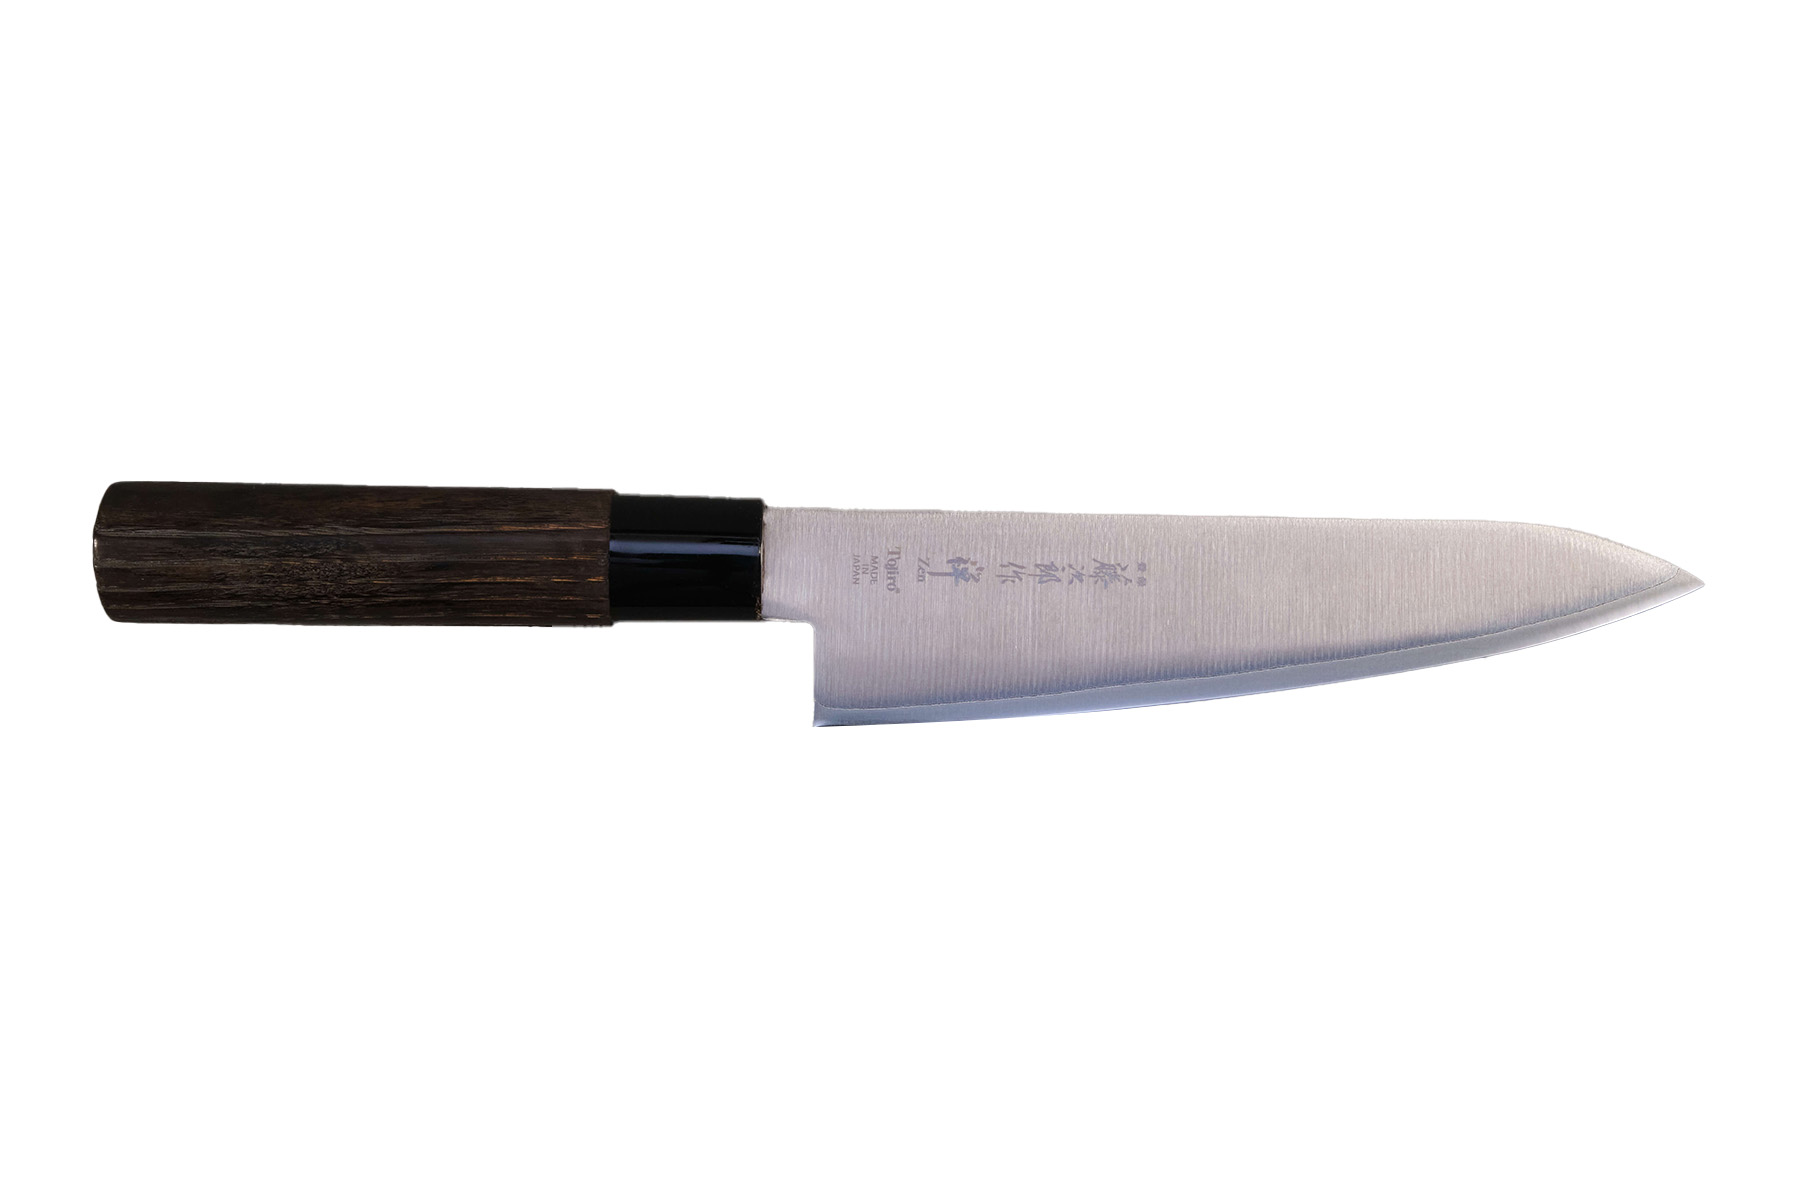 Couteau japonais Zen Black Tojiro Chef 18 cm